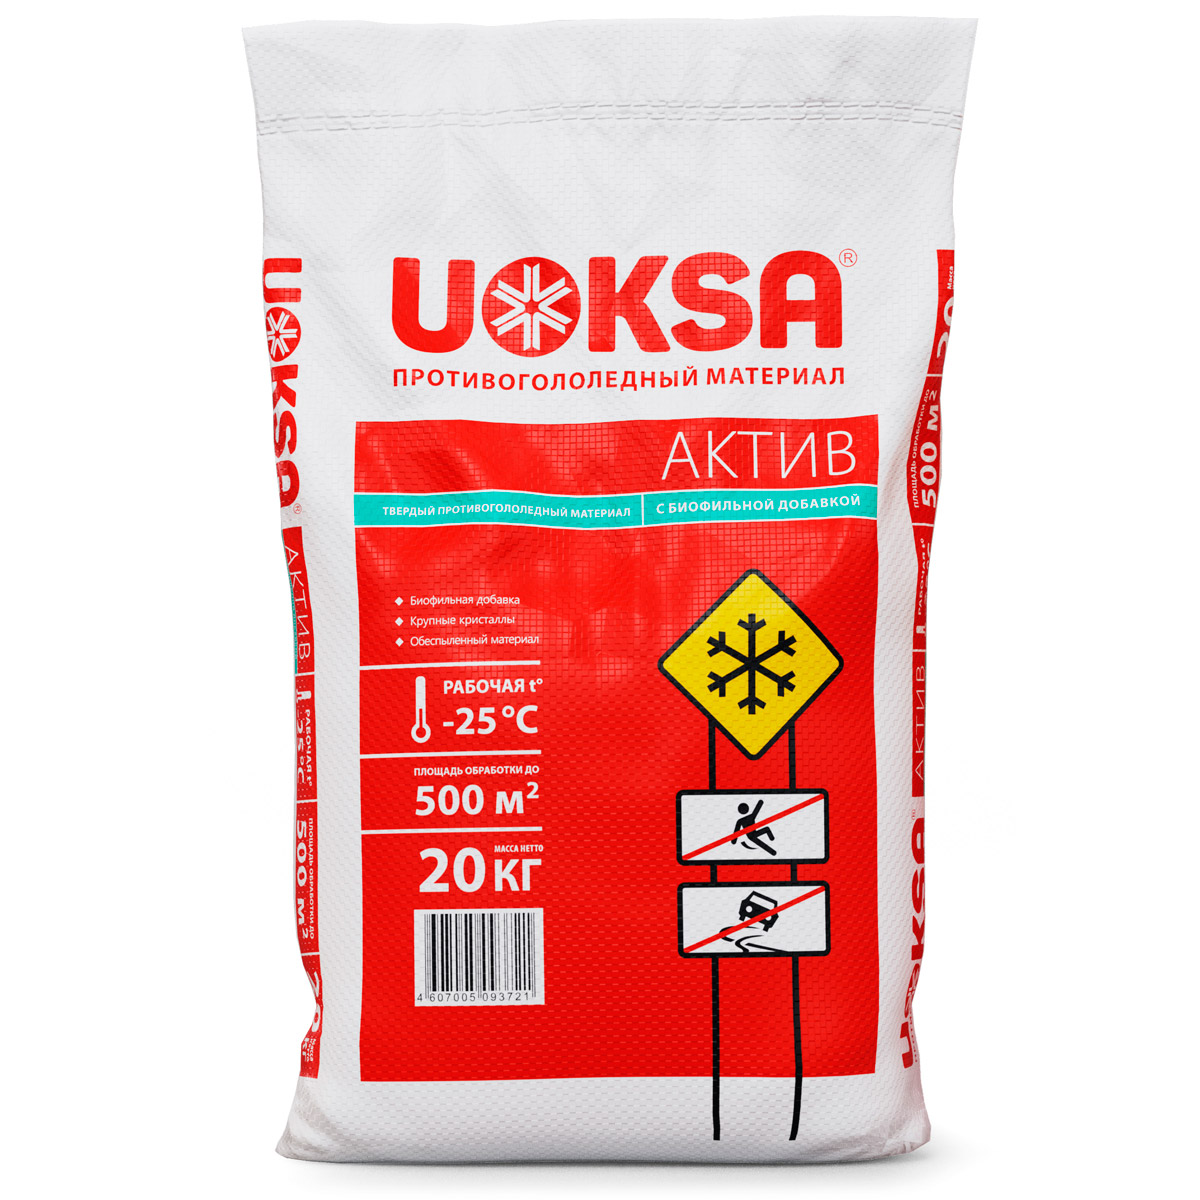 Актив 25 лет. Песчано соляная смесь Ratmix. UOKSA Актив 5кг. Реагент противогололедный пескосоль -25 °с 50 кг в Леруа Мерлен. UOKSA Кристал (до -15с), 20 кг.